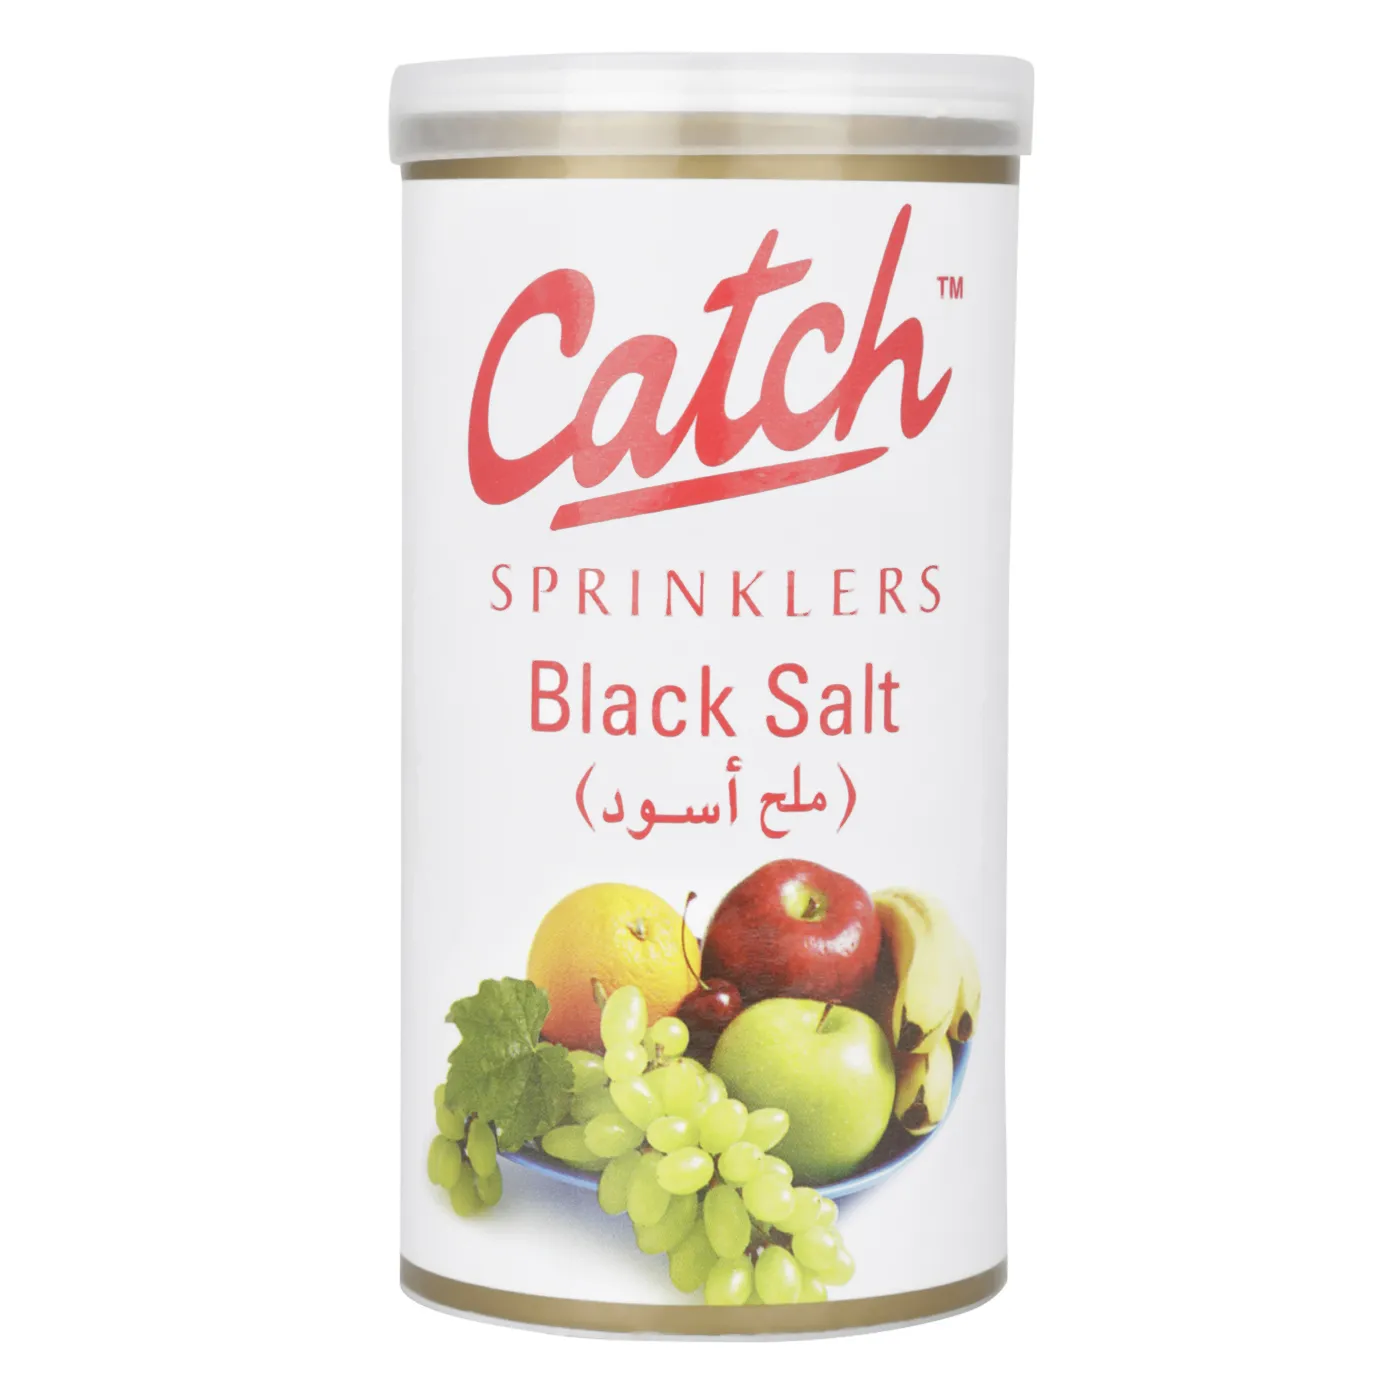 CATCH SPRINKLER BLACK SALT